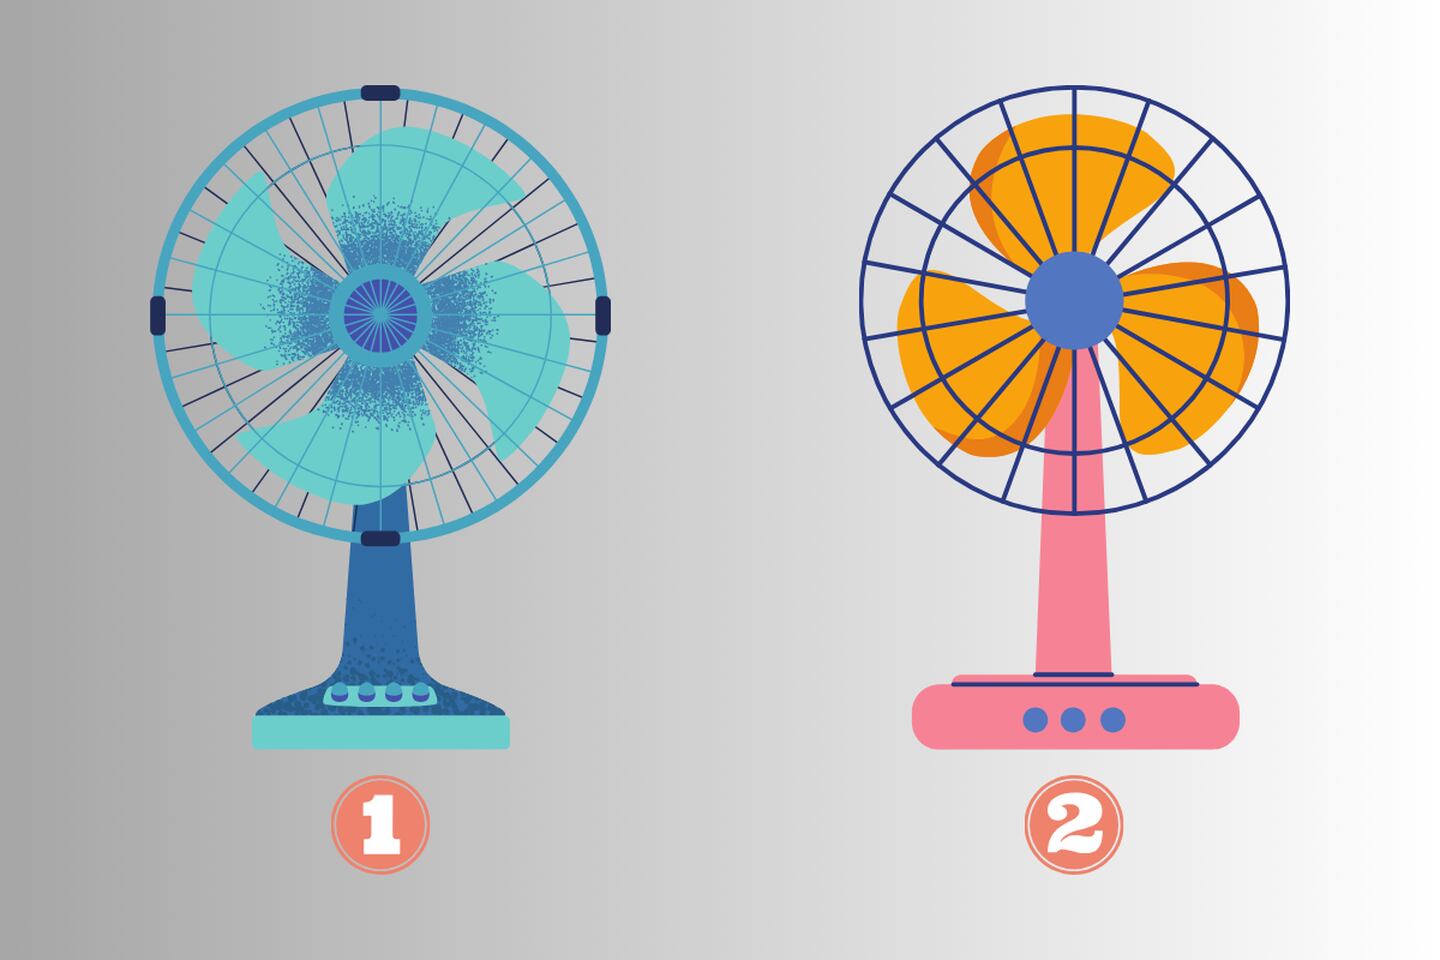 Dos alternativas en este test de personalidad: un ventilador azul con cuatro puntas; y un ventilador rosado con tres puntas redondeadas.